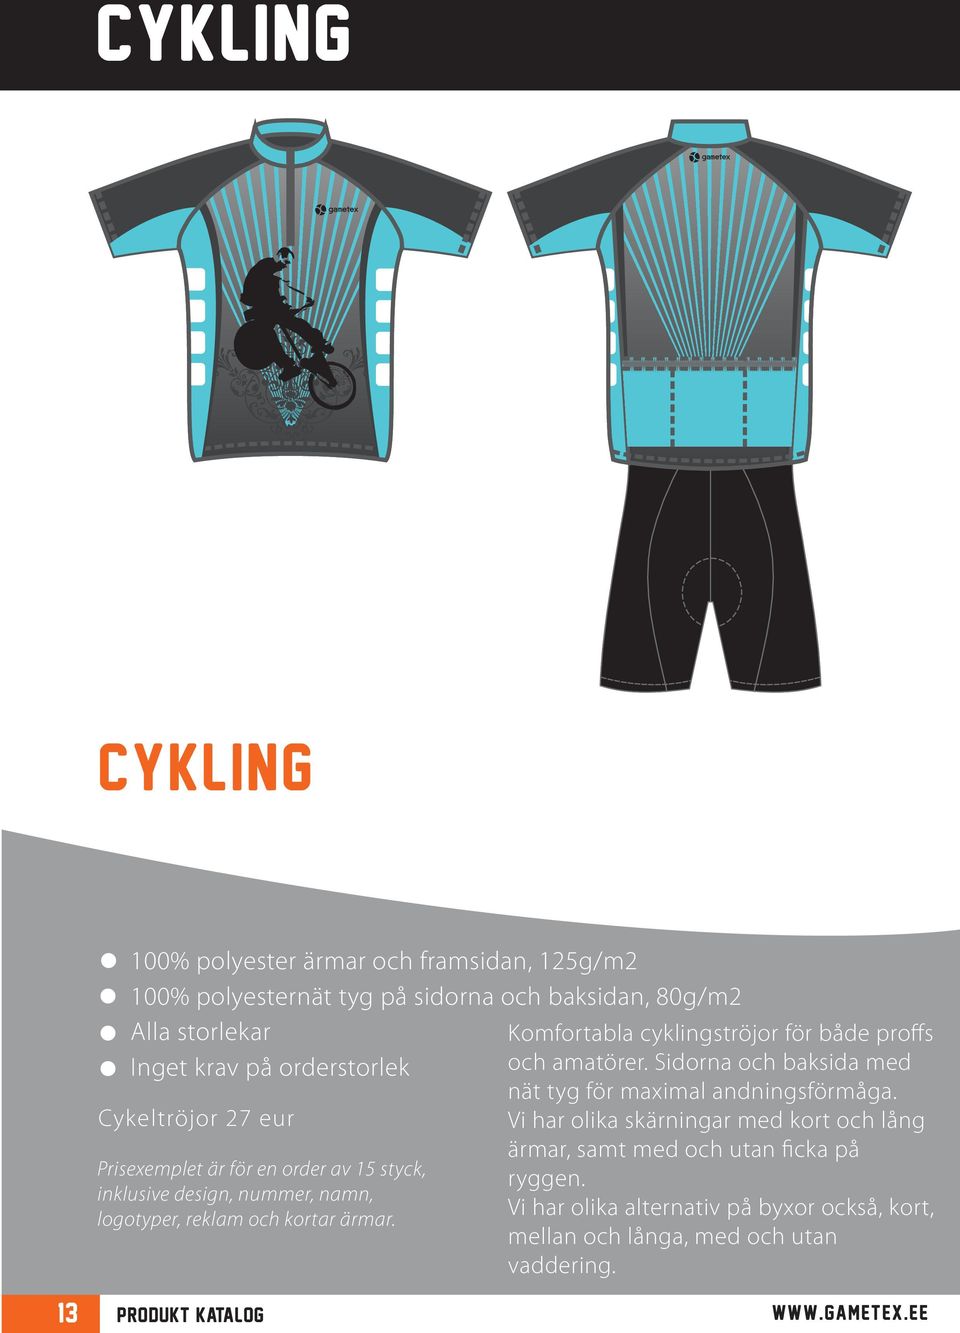 Komfortabla cyklingströjor för både proffs och amatörer. Sidorna och baksida med nät tyg för maximal andningsförmåga.